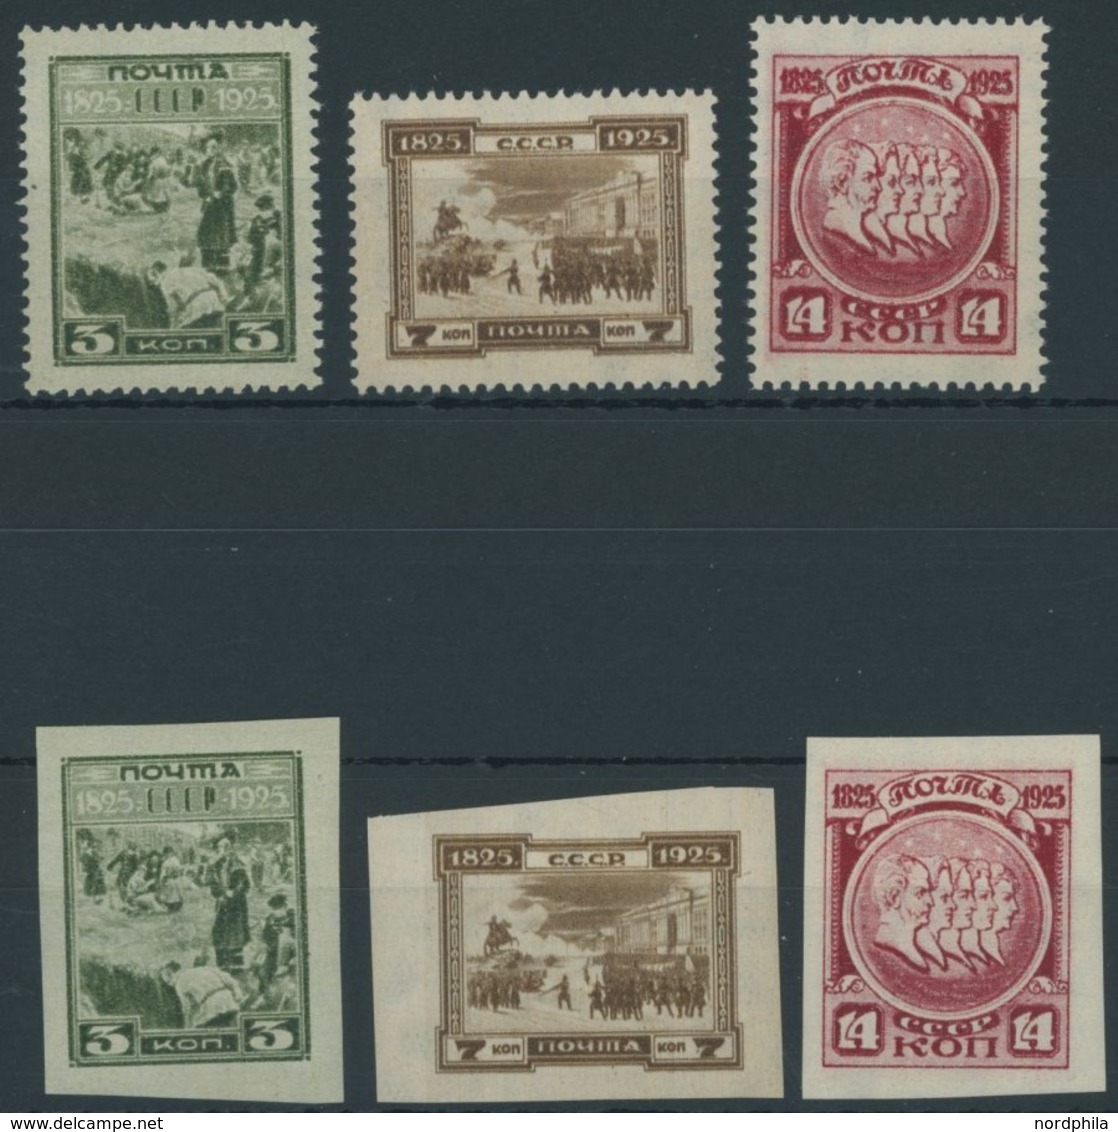 SOWJETUNION 305-07A/B **, 1925, Dekabristenaufstand, Gezähnt Und Ungezähnt, 2 Postfrische Prachtsätze, Mi. 110.- - Used Stamps